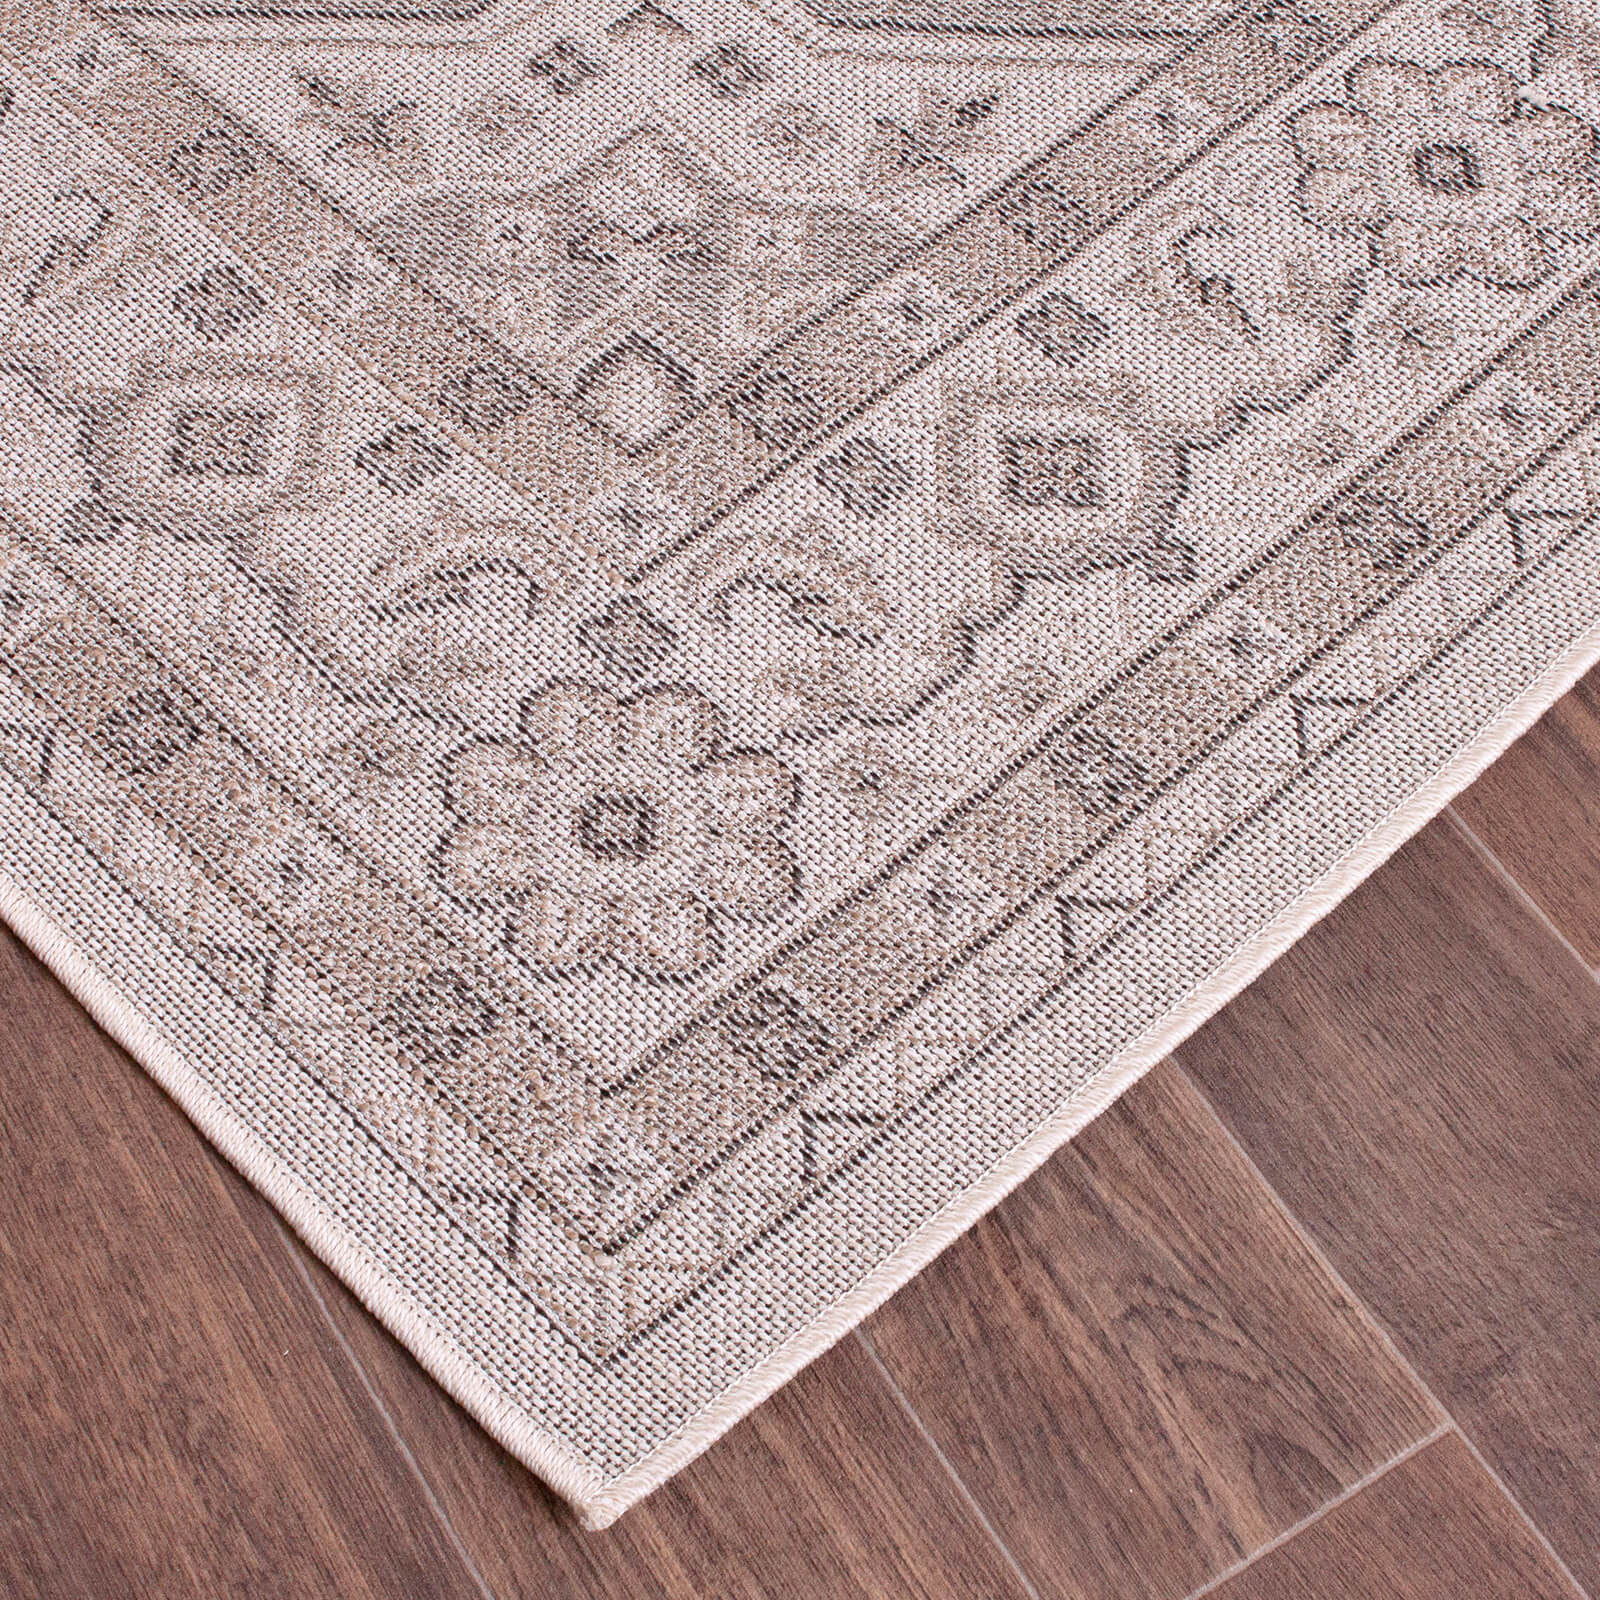 Handmade Carpets Persian Outdoor Beige Rug